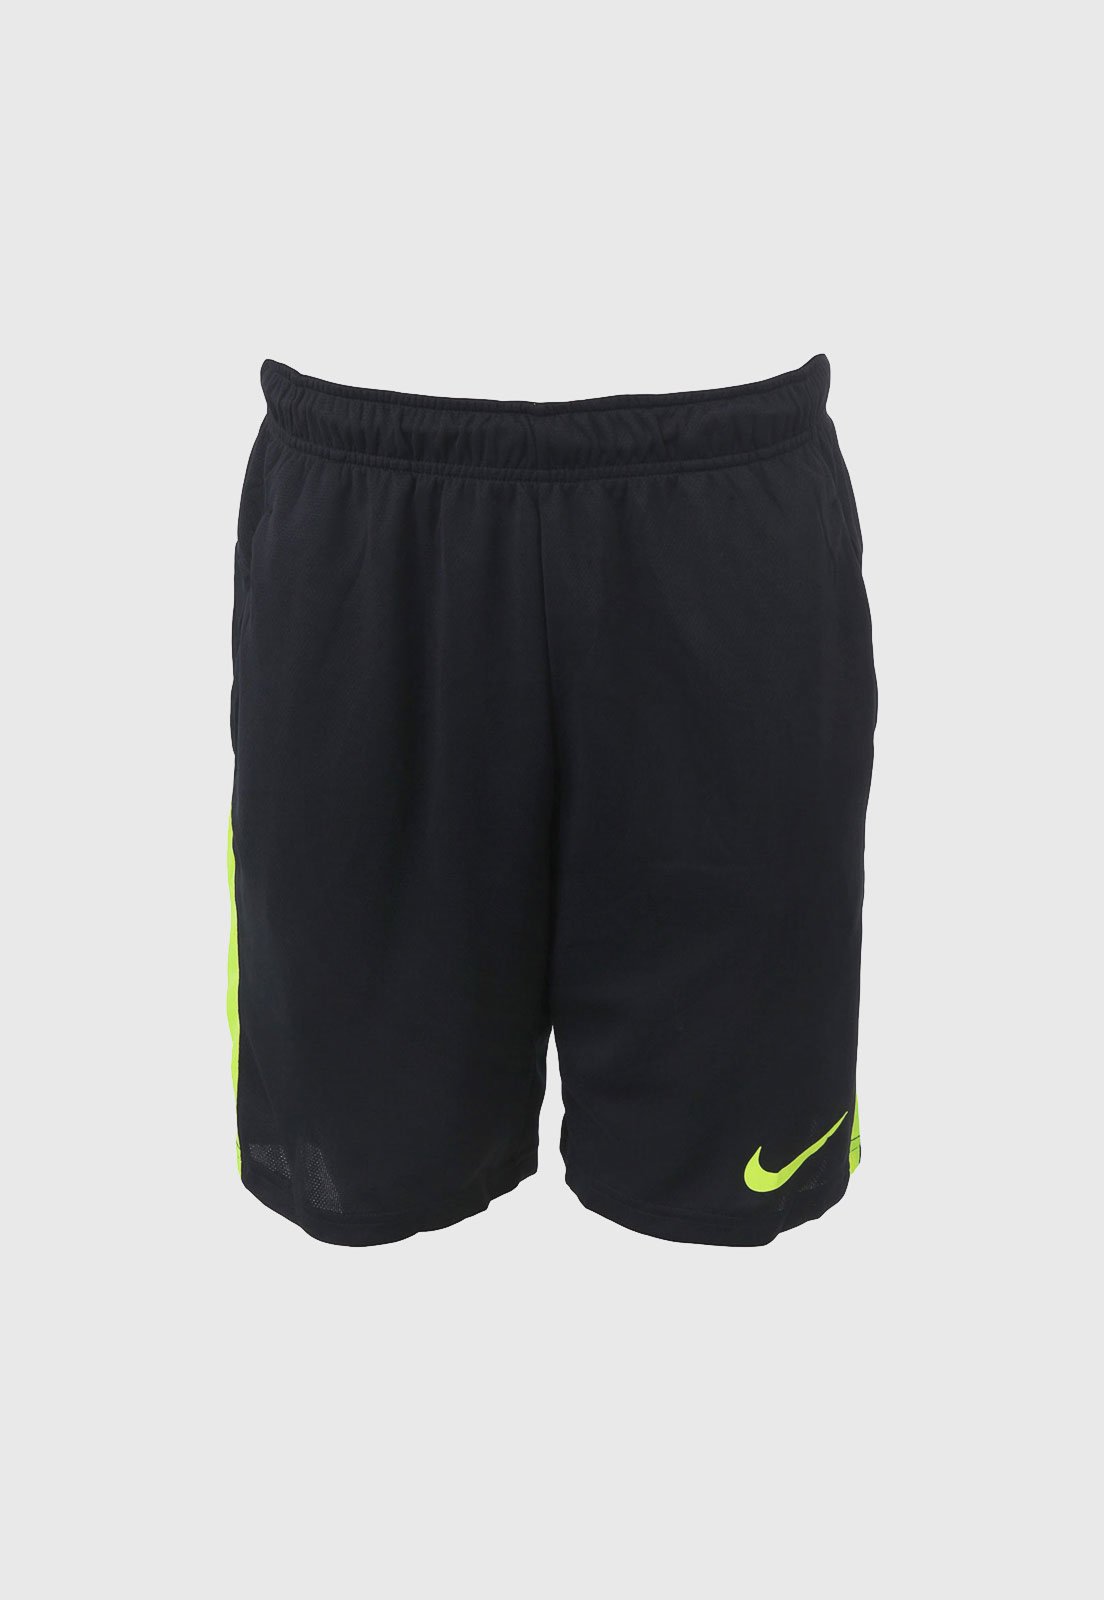 Bermuda Nike Dry Short 5.0